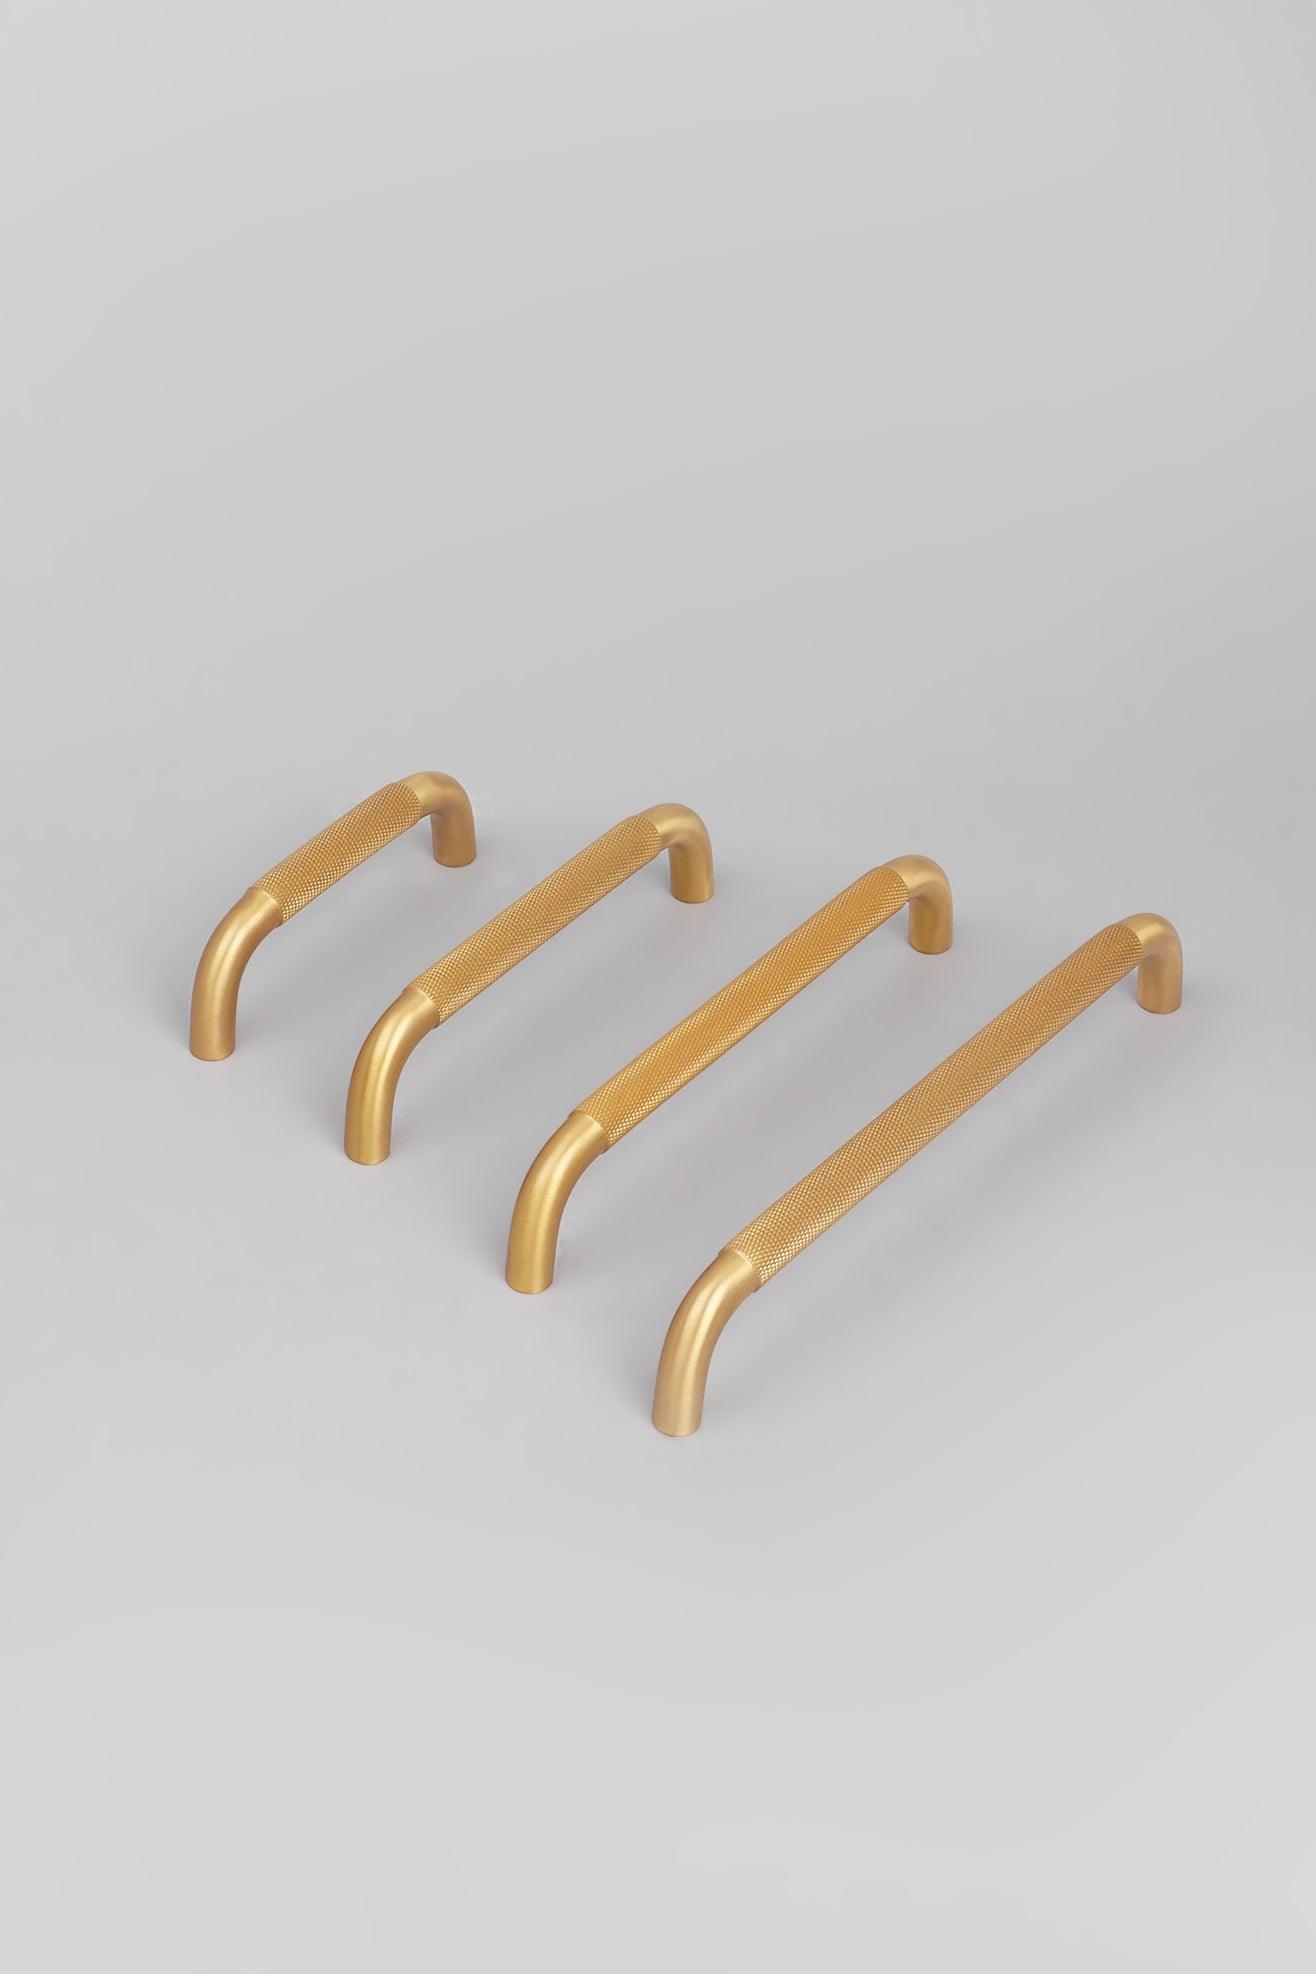 Solid Brass Knurled Design Kitchen Unit Drawer Bar Handles